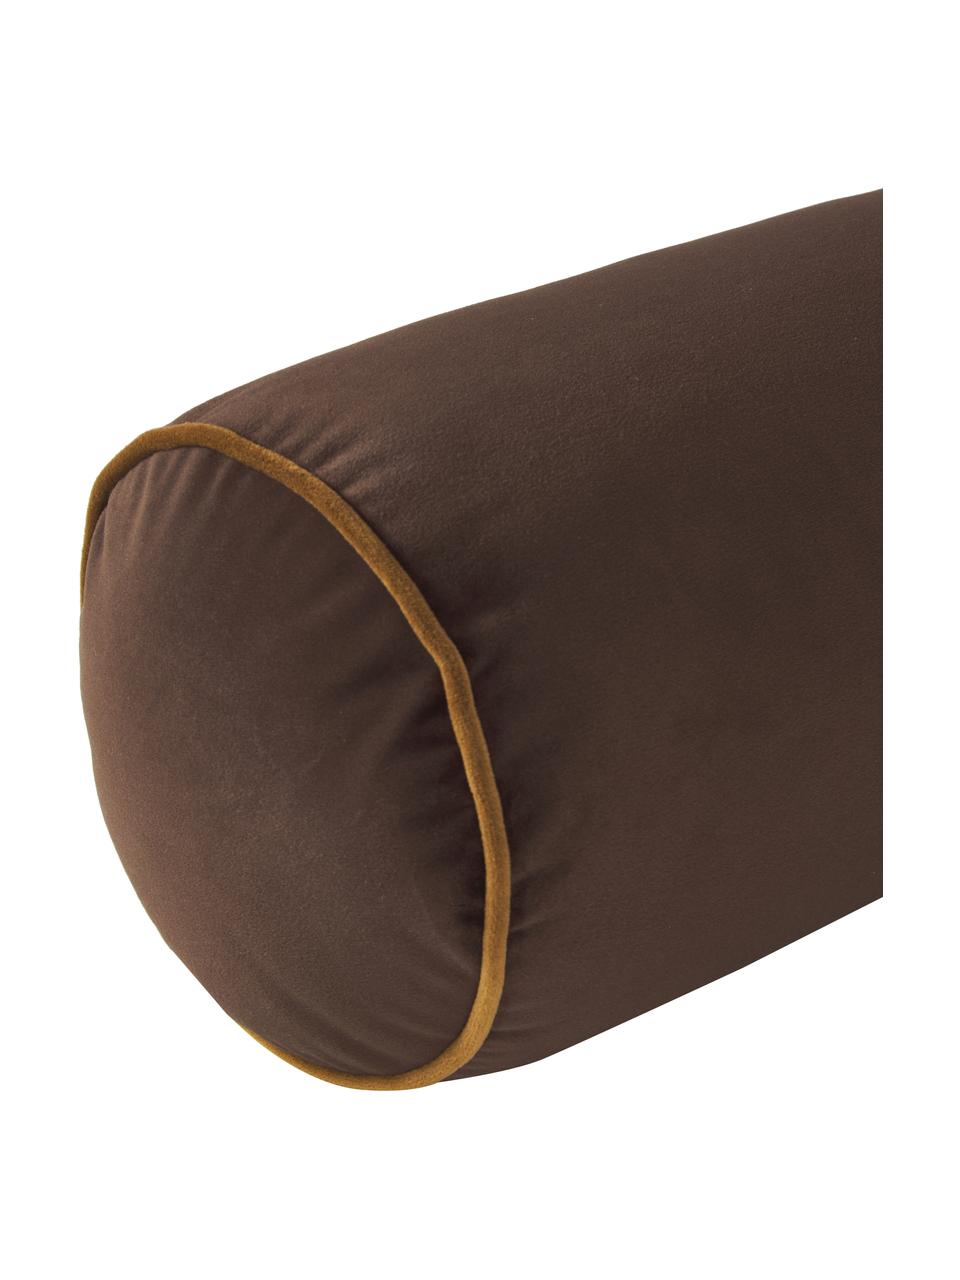 Cuscino rullo in velluto marrone scuro Monet, Rivestimento: 100% velluto di poliester, Marrone, Ø 18 x Lung. 45 cm